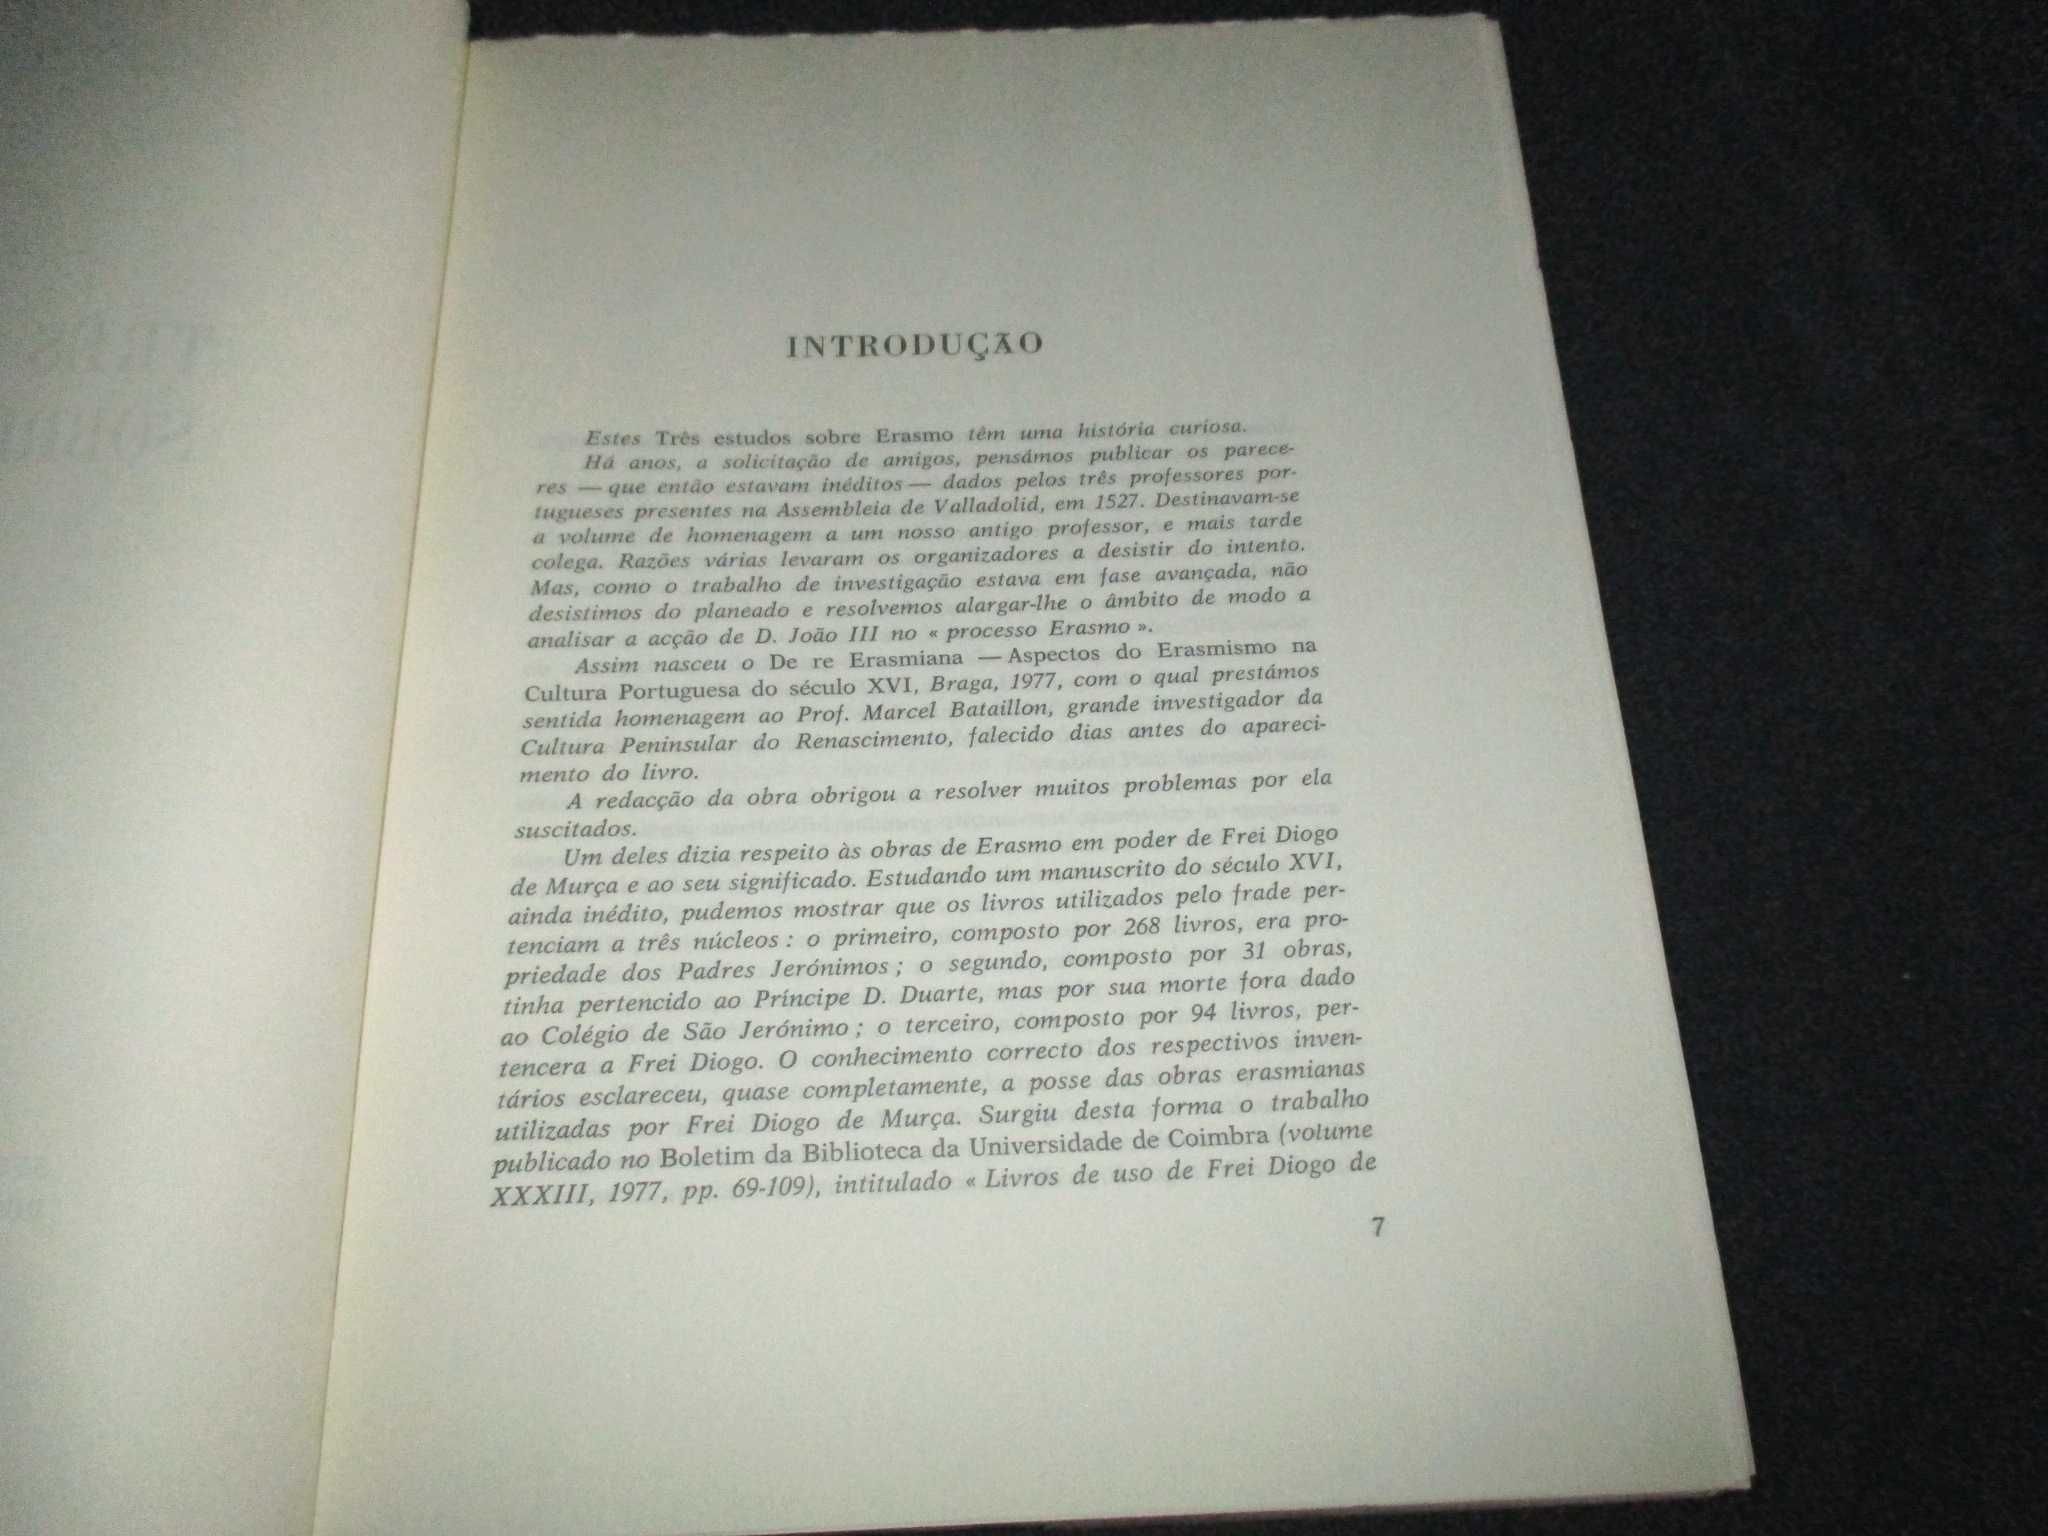 Livro Três Estudos sobre Erasmo Artur Moreira de Sá